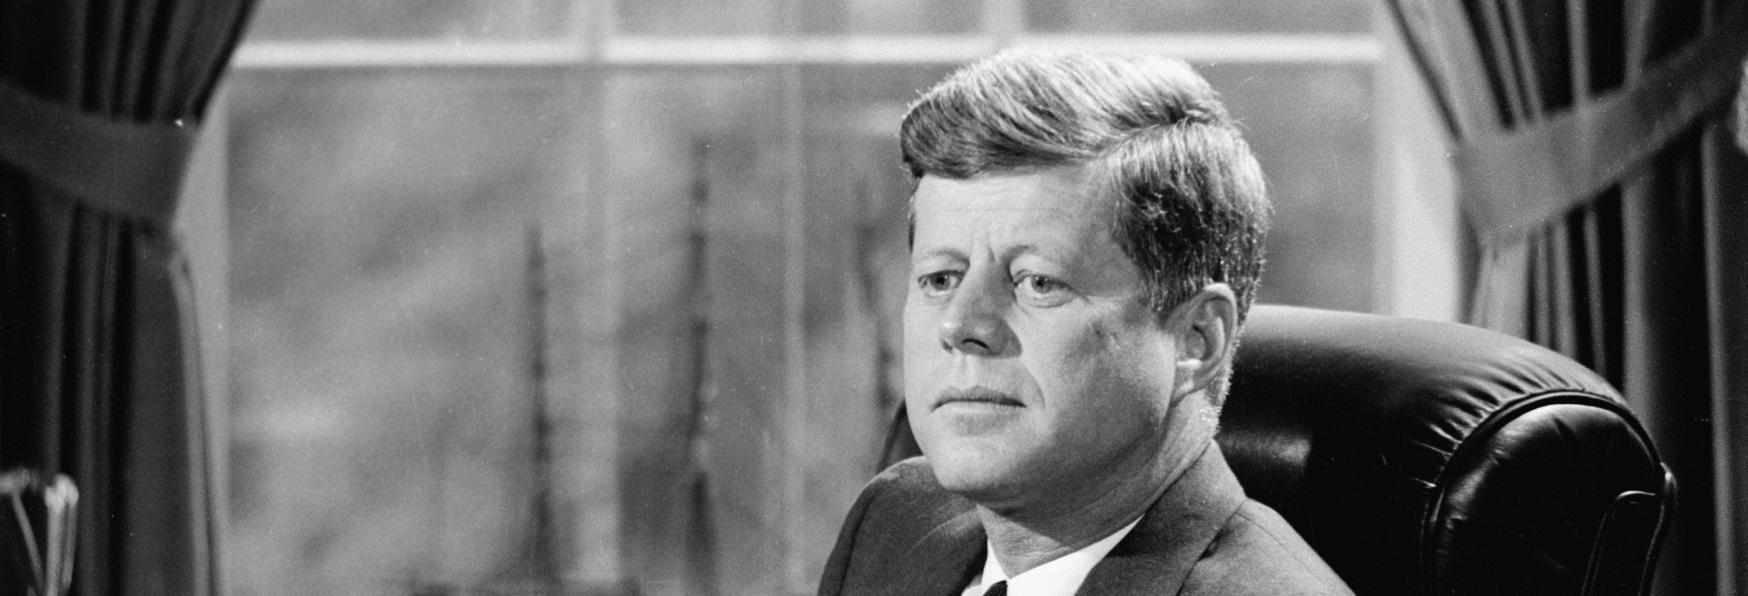 In Fase di Sviluppo una nuova Docuserie su John F. Kennedy